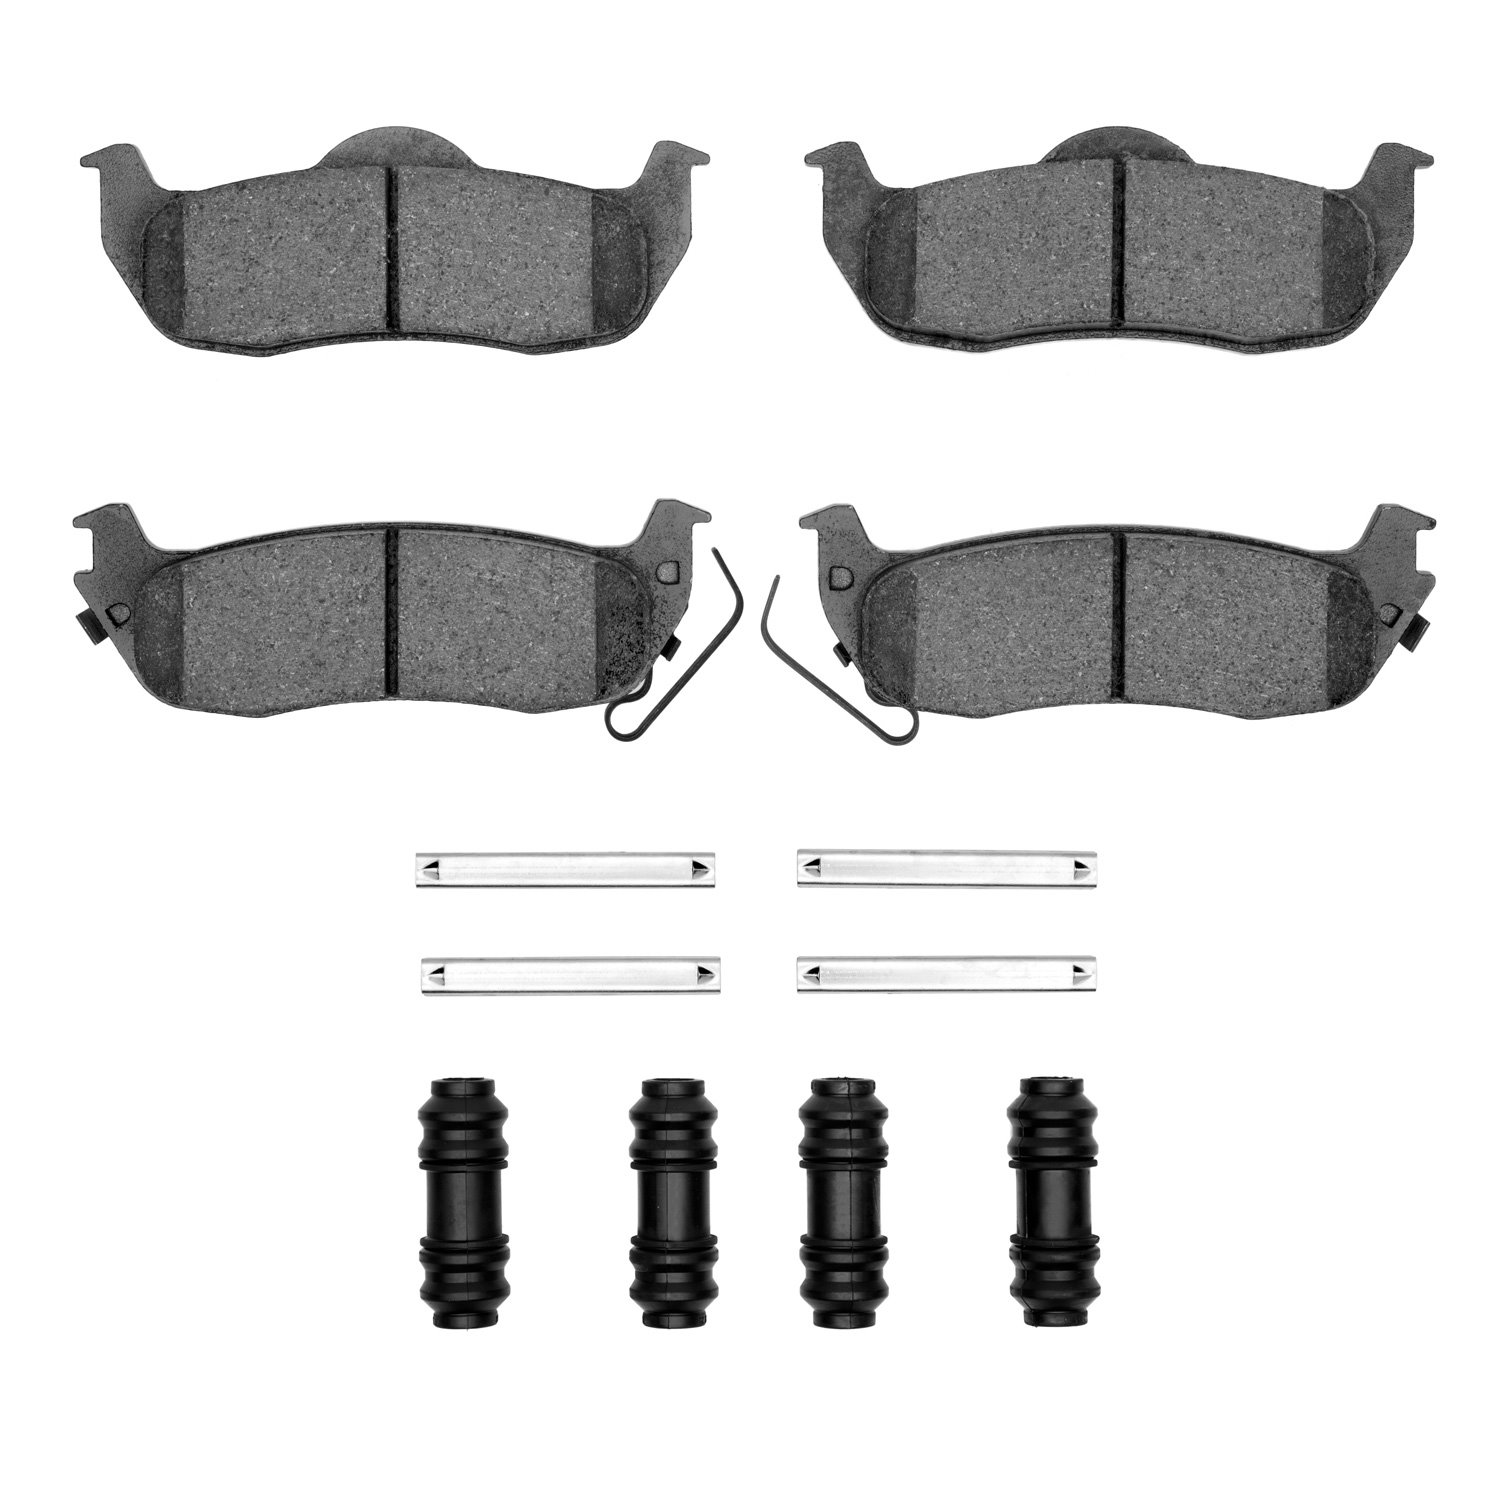 1310-1041-01 3000-Series Ceramic Brake Pads & Hardware Kit, 2004-2015 Infiniti/Nissan, Position: Rear